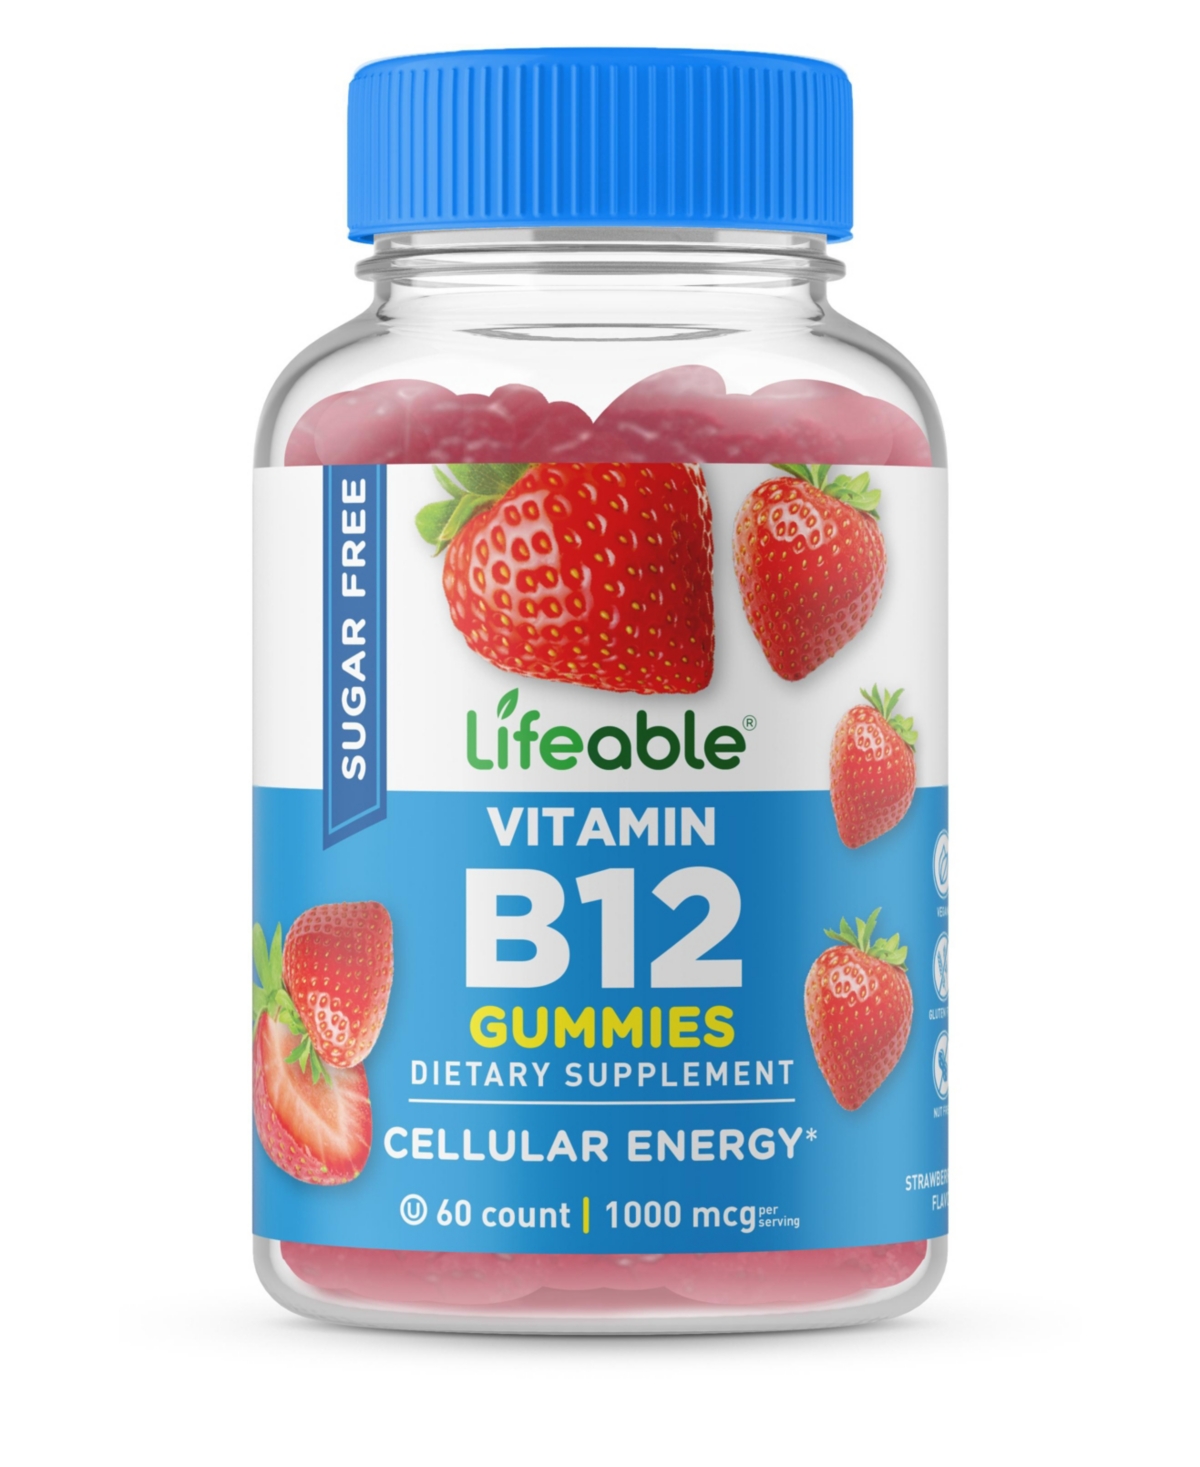 Sugar Free Vitamin B12 1,000 mcg Gummies - Energy, Mood, And Metabolism - Great Tasting Flavor, Dietary Supplement Vitamins - 60 Gummies - Op